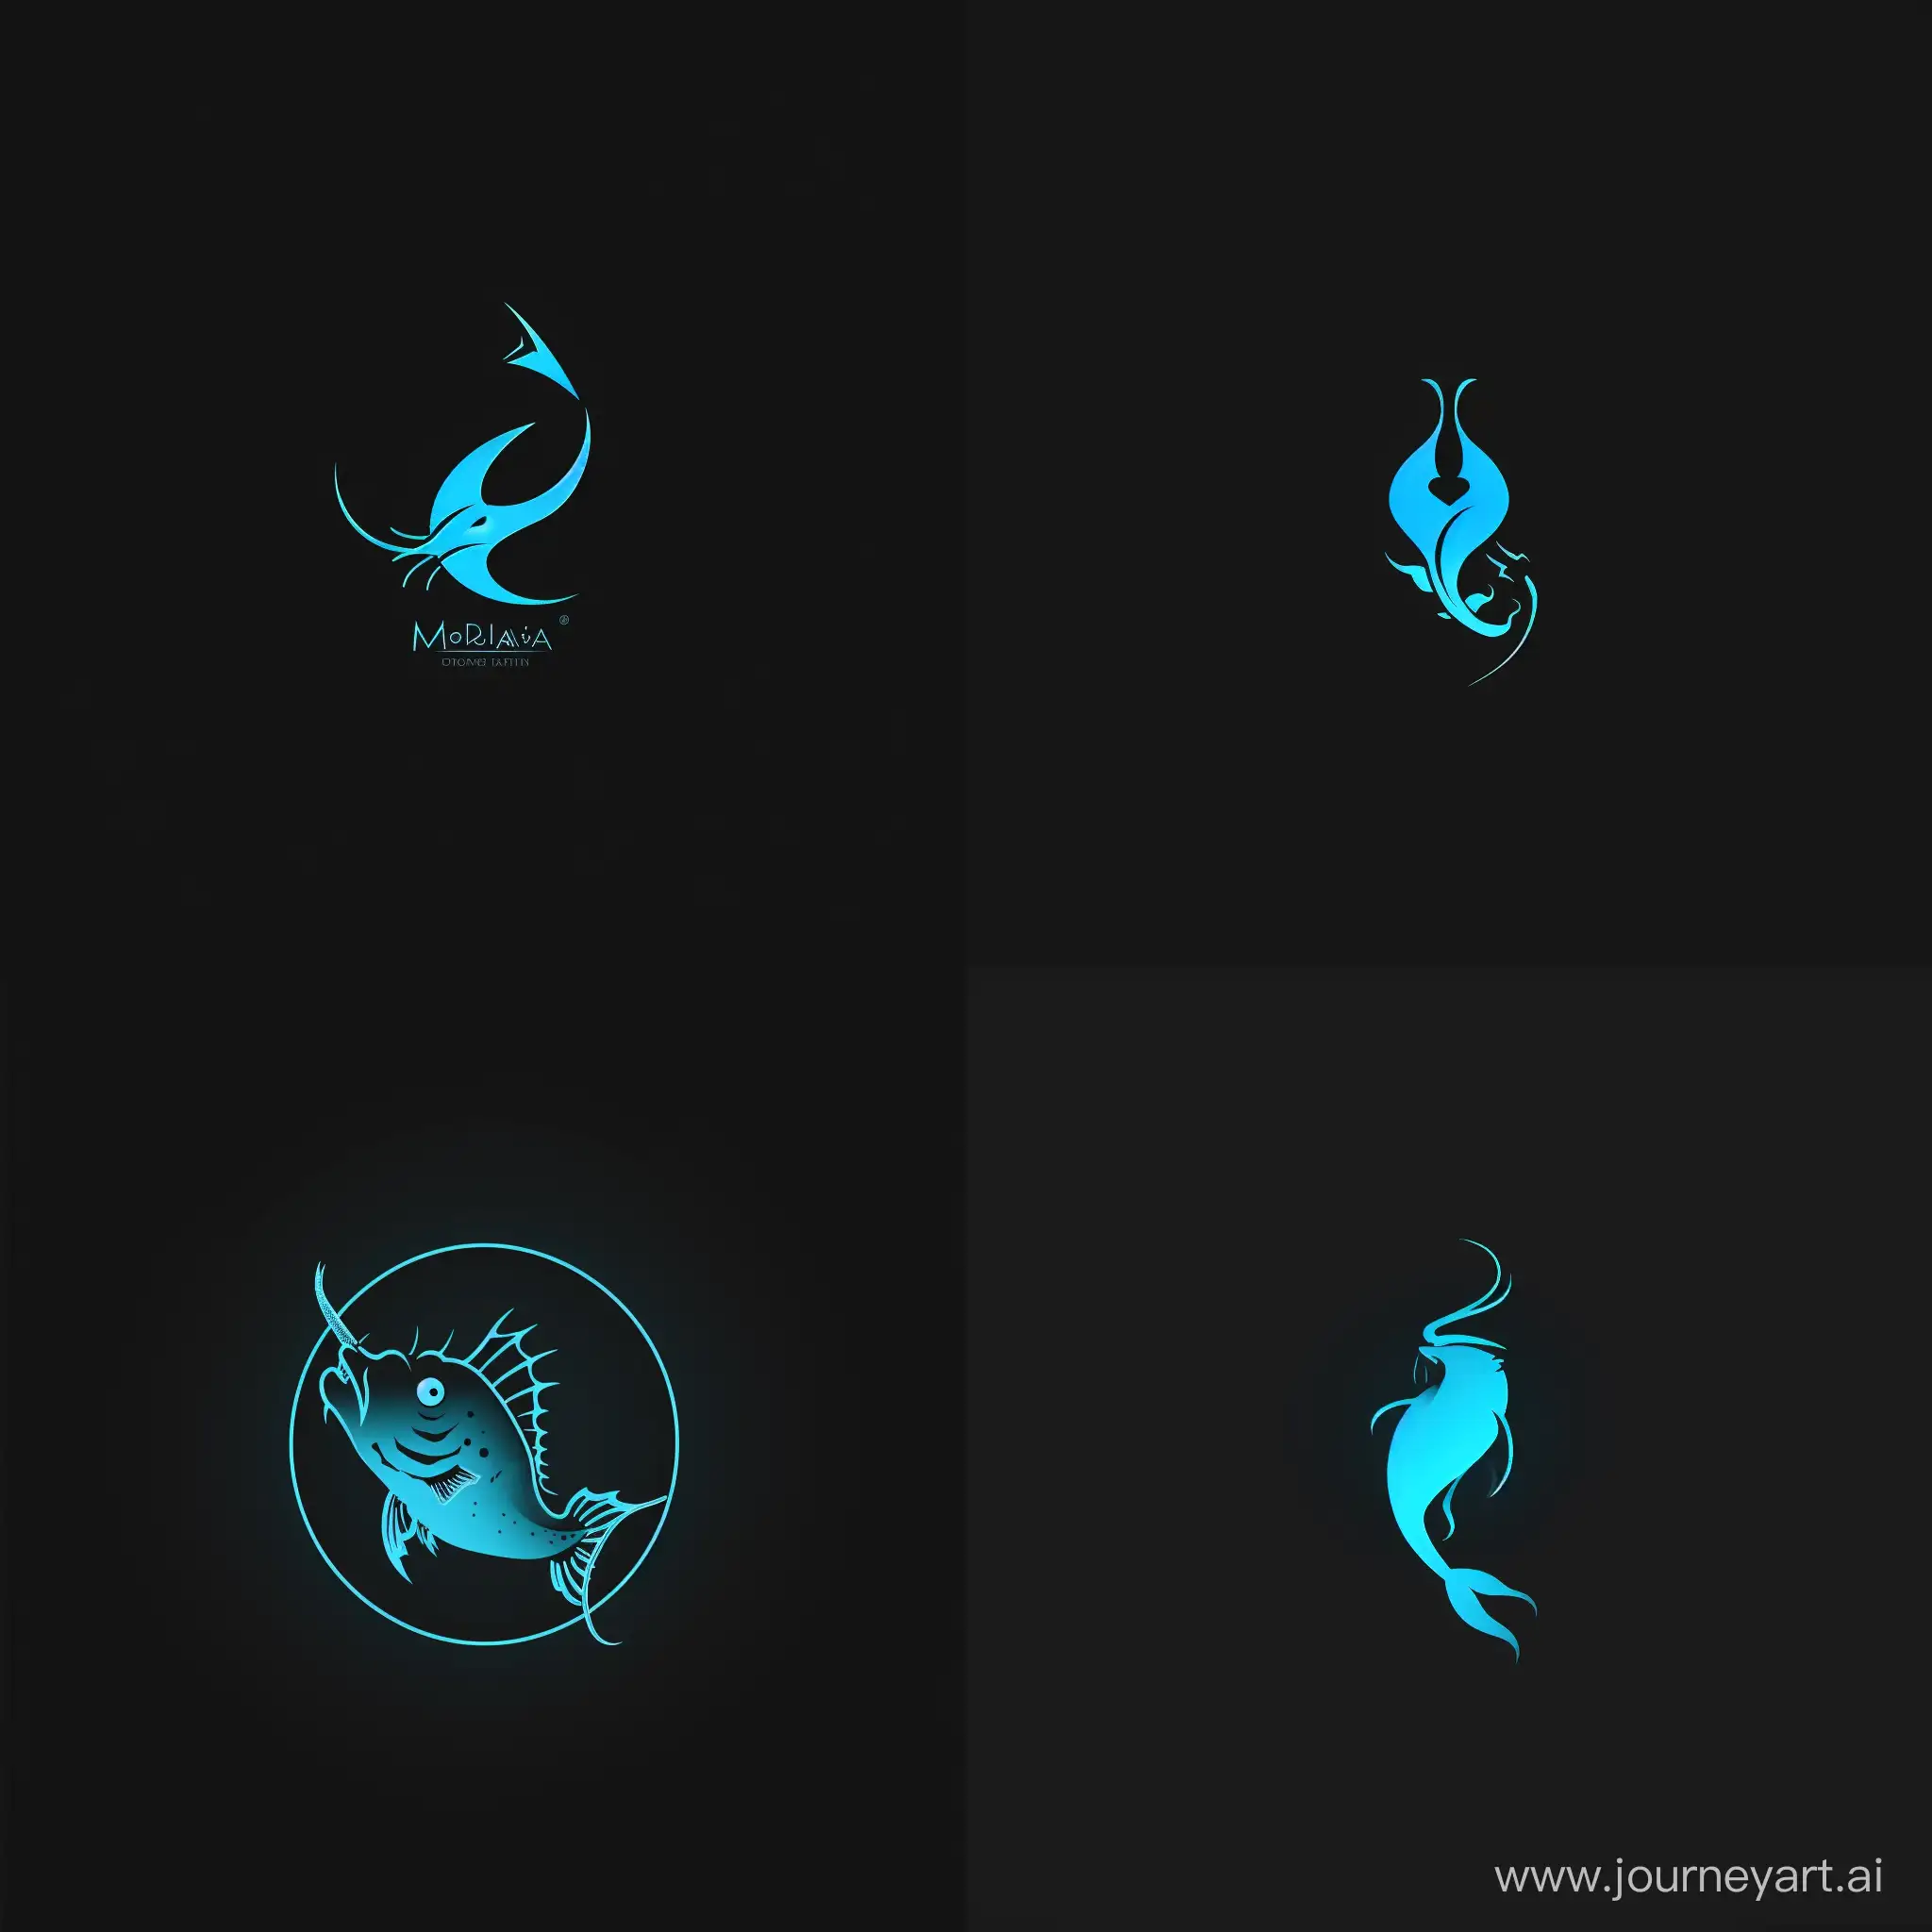 создать логотип, где в центре будет изображен кислотно-синяя рыба-удильщик на черном фоне. настроение у медузы спокойное. логотип должен быть немного минималистичным, а рыба-удильщик должна немного светиться синим свечением.